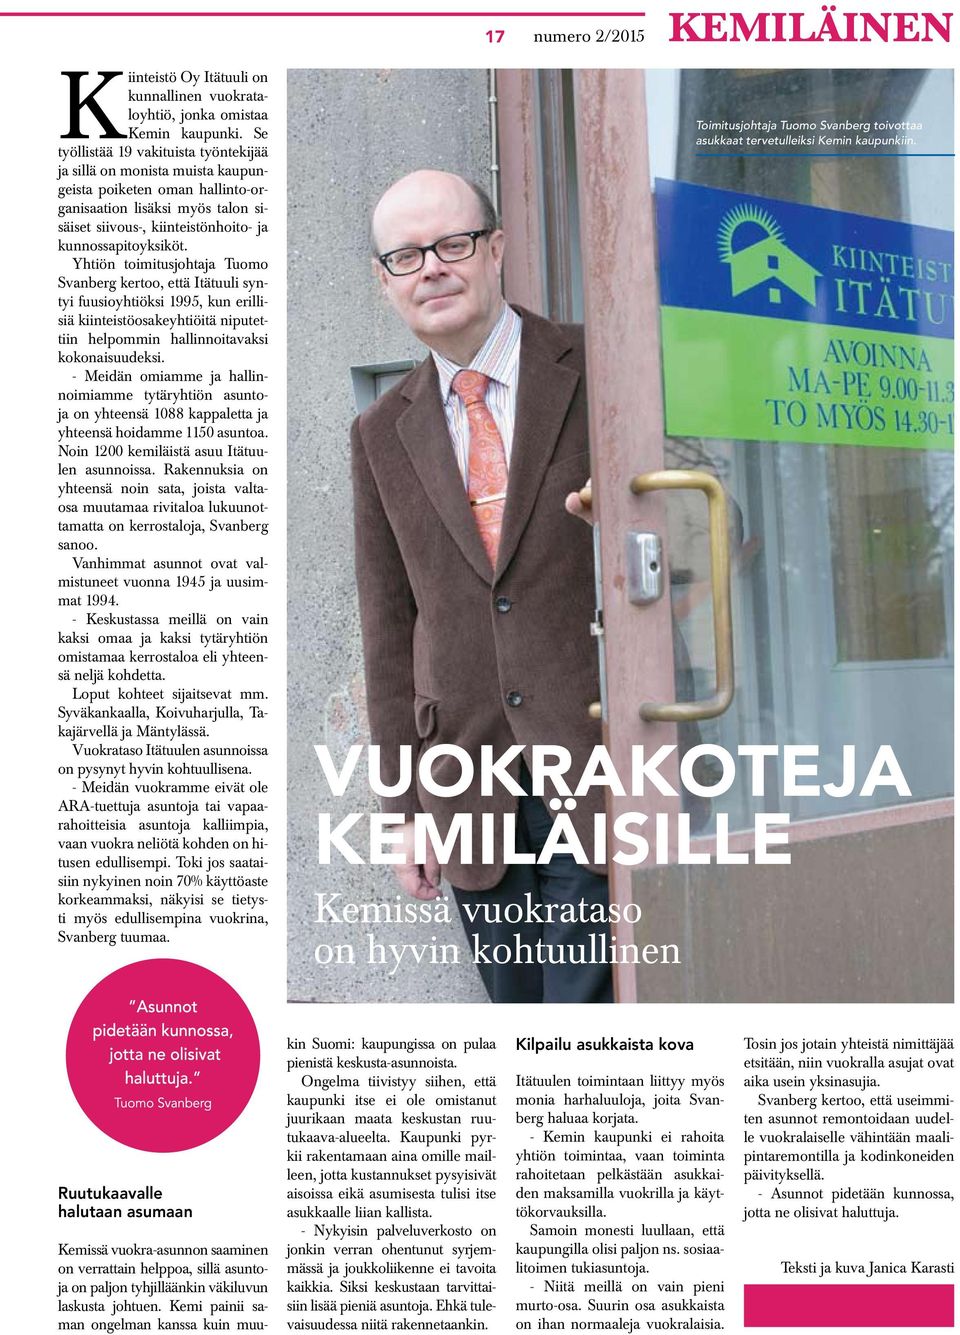 Yhtiön toimitusjohtaja Tuomo Svanberg kertoo, että Itätuuli syntyi fuusioyhtiöksi 1995, kun erillisiä kiinteistöosakeyhtiöitä niputettiin helpommin hallinnoitavaksi kokonaisuudeksi.